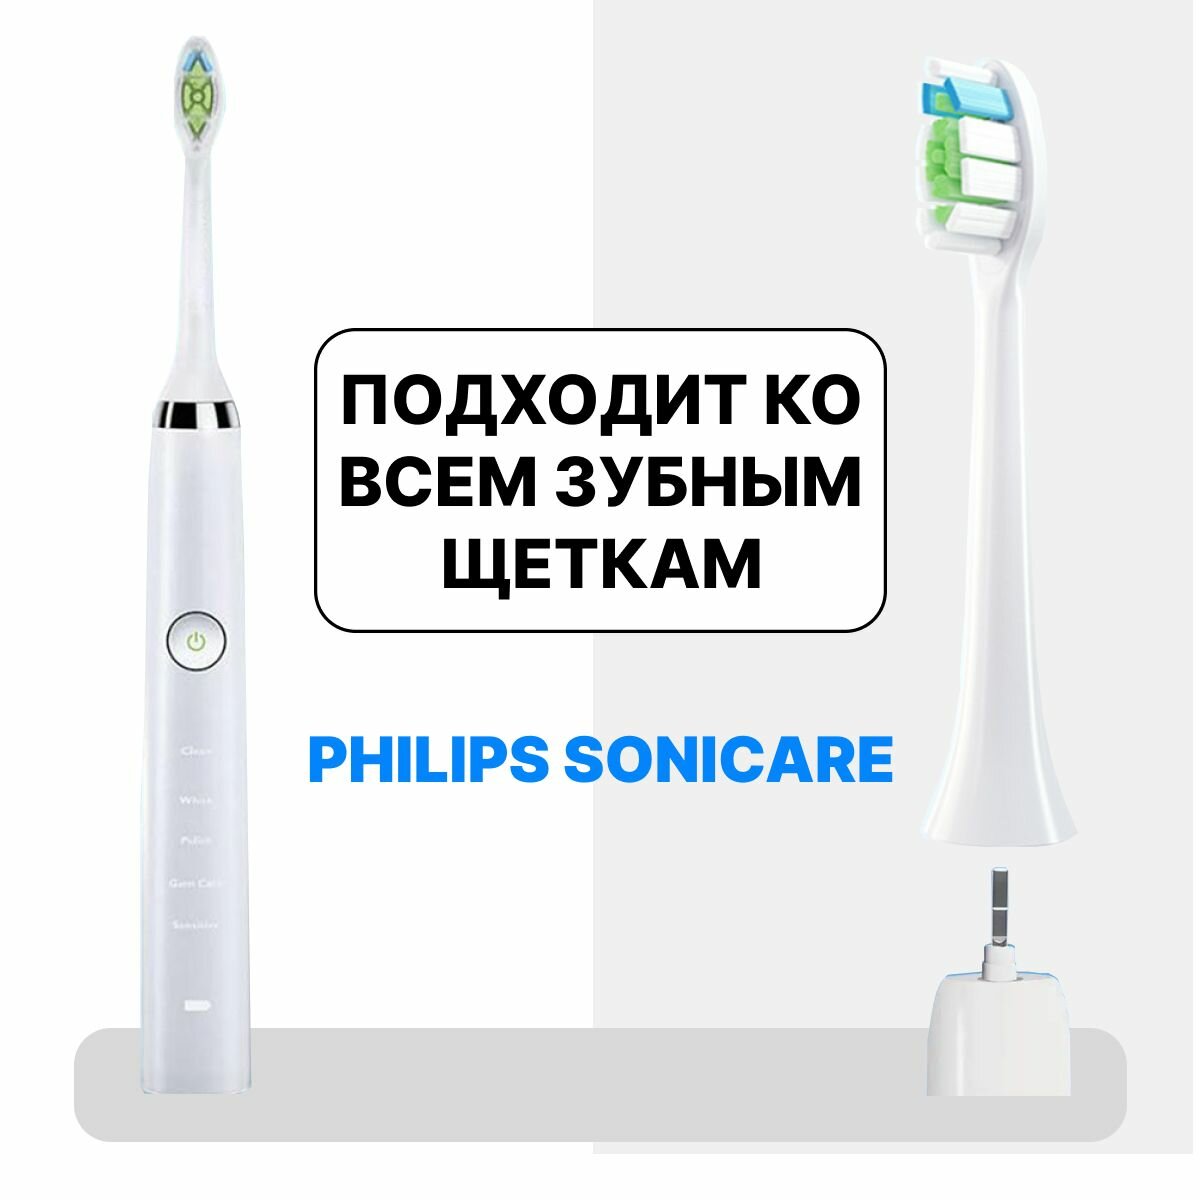 Насадки для электрической зубной щетки Philips Sonicare 4 шт. Белые.